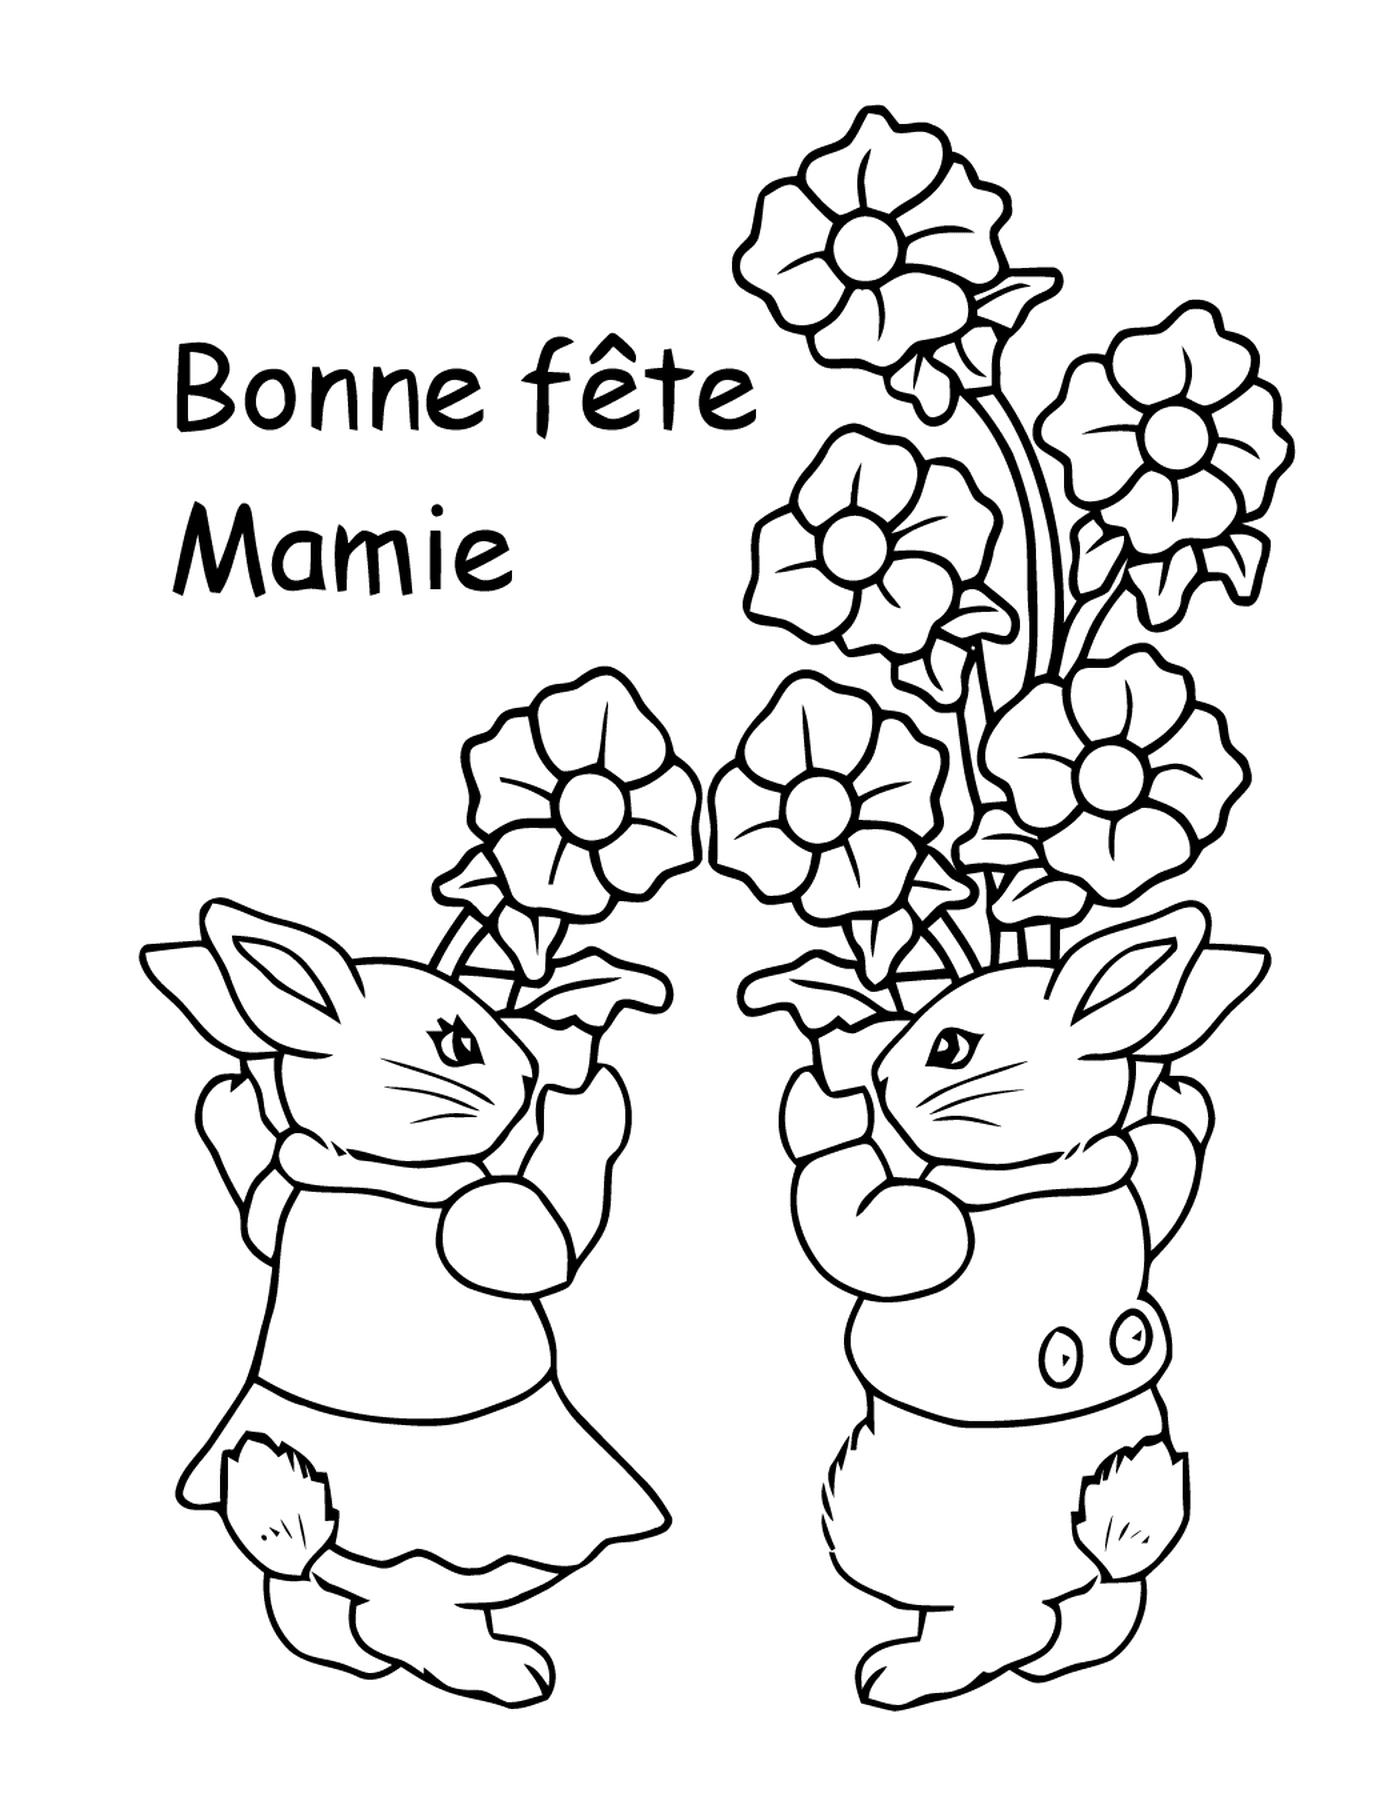   Deux lapins tenant un bouquet de fleurs dans leurs mains 